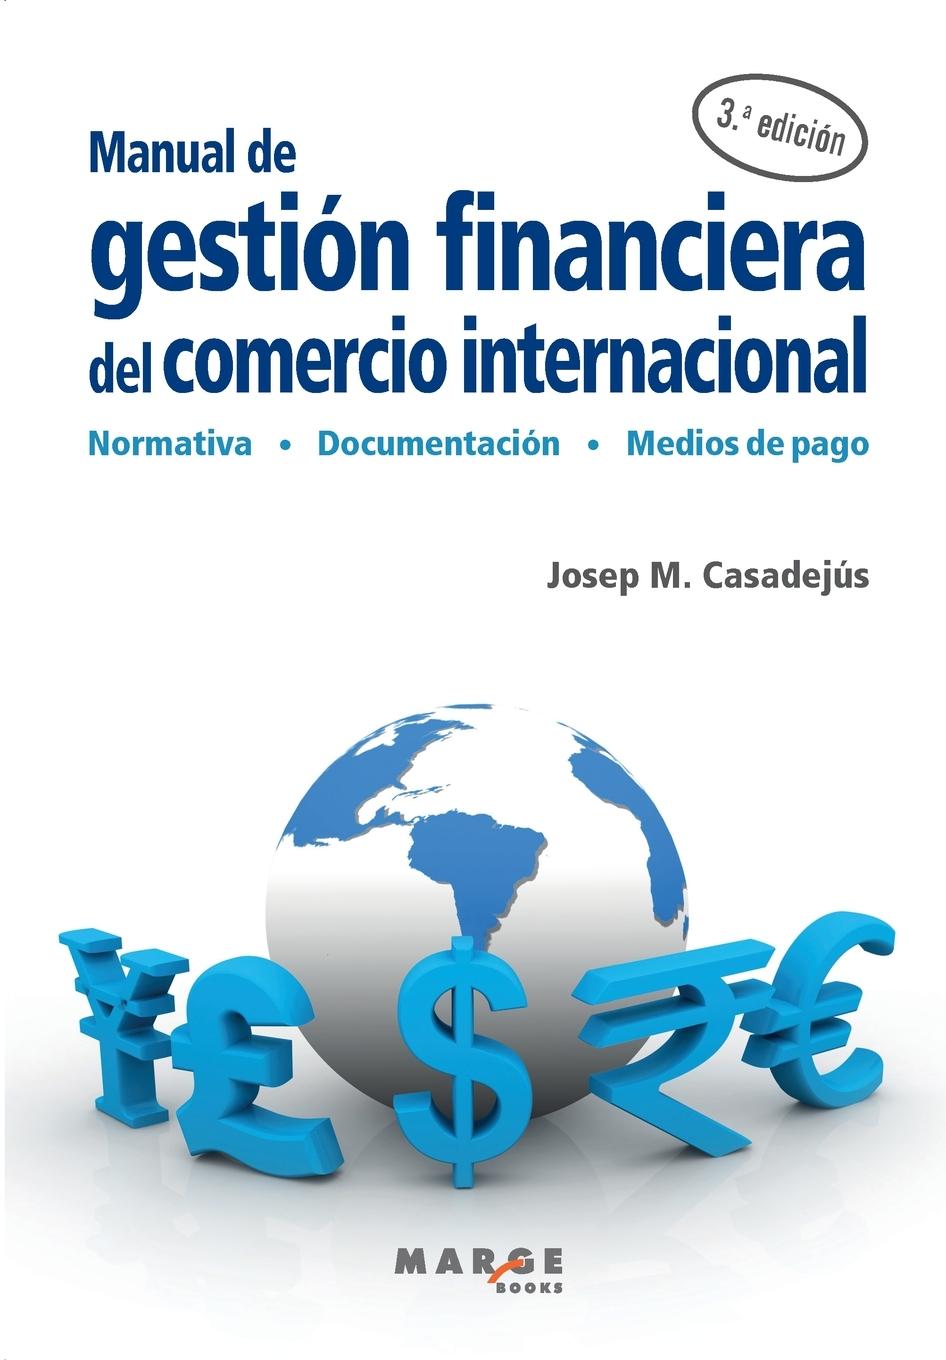 Книга MANUAL DE GESTION FINANCIERA DEL COMERCIO INTERNACIONAL JOSEP M CASADEJUS